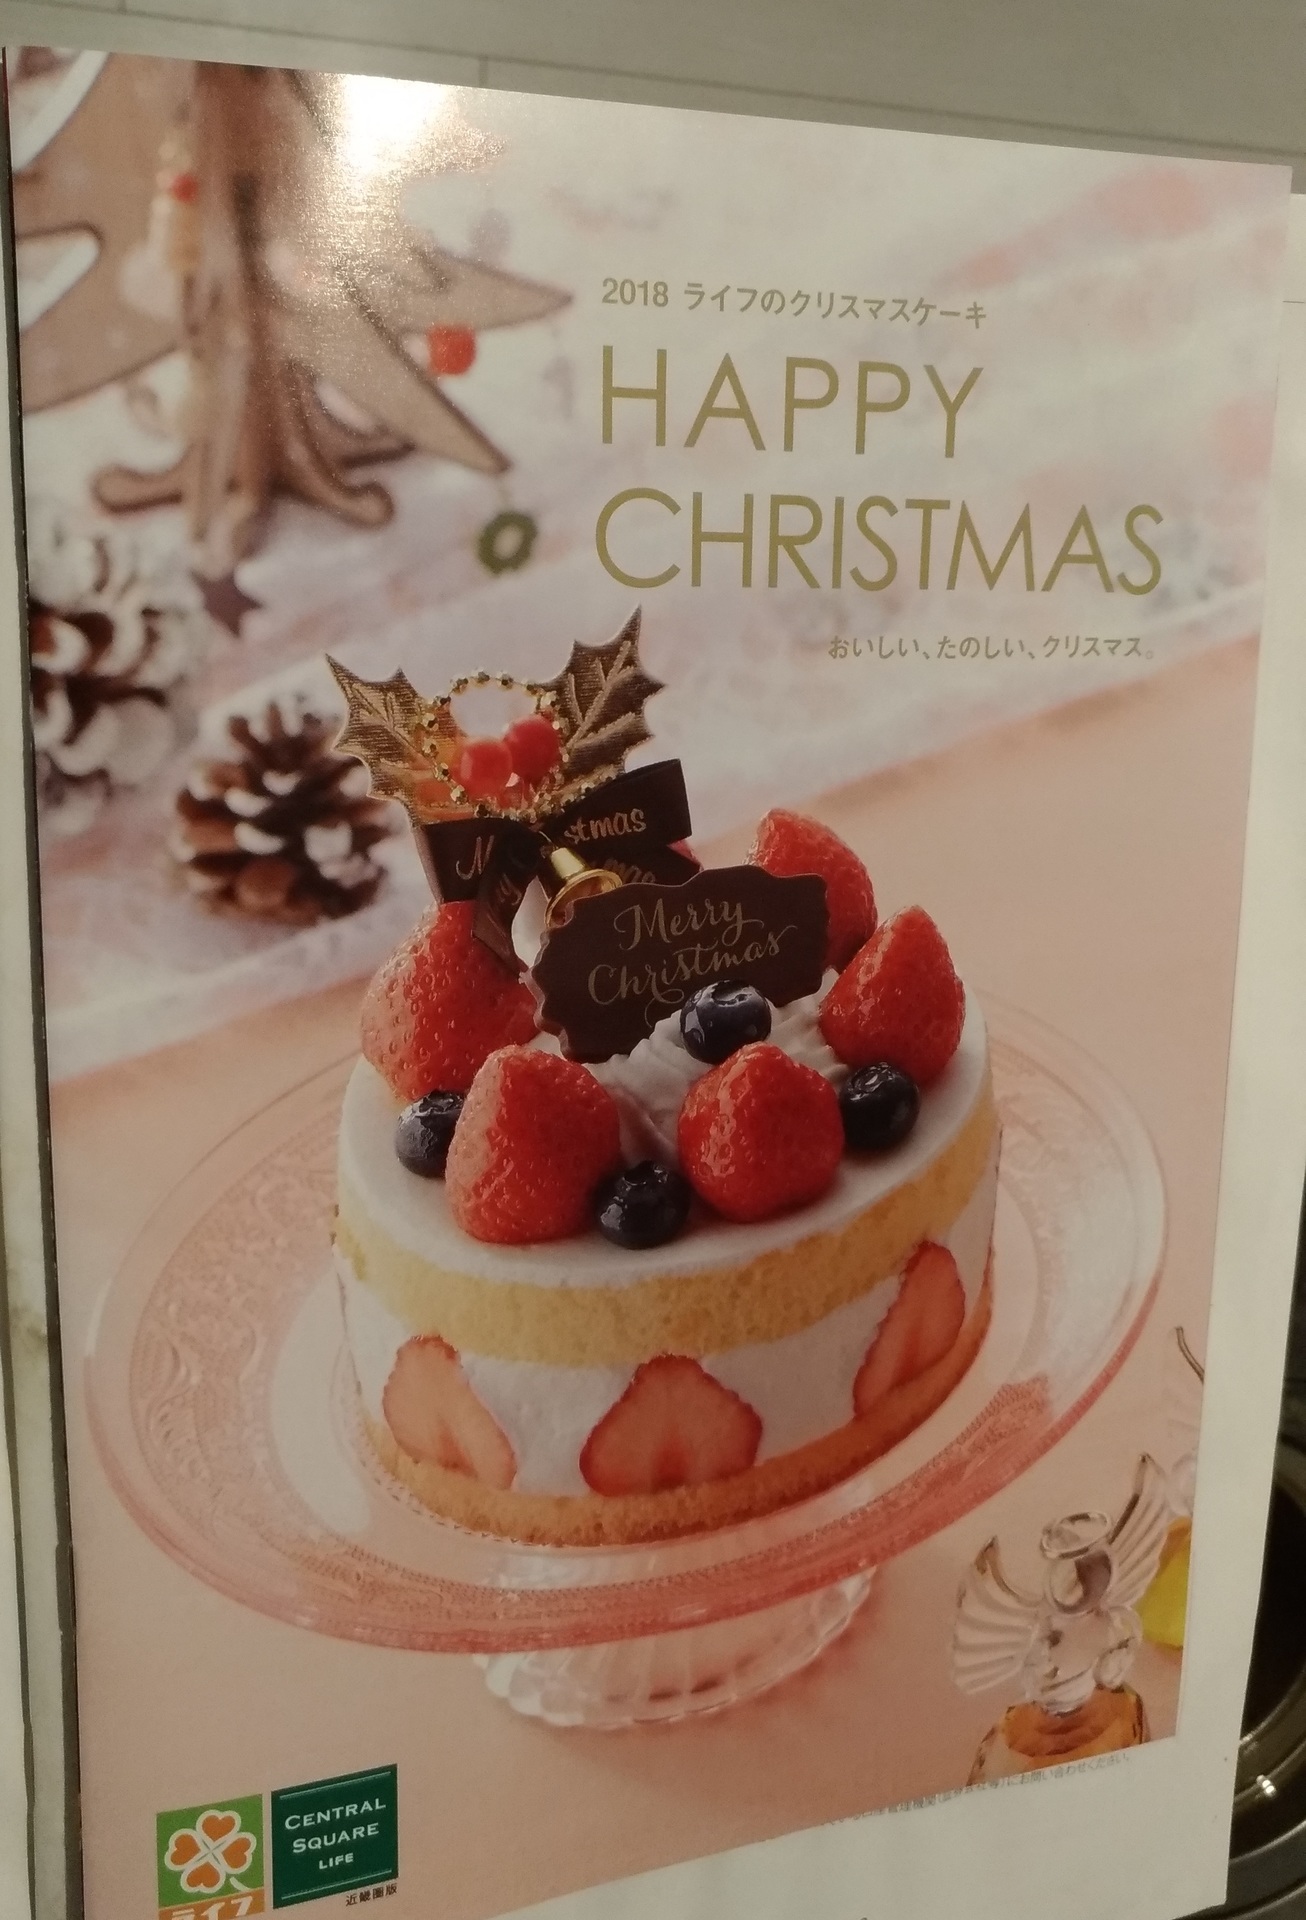 クリスマスケーキ予約18大阪 スーパーライフで豪華な商品も スーパーライフ 大阪おすすめお惣菜野菜をブログでポイントも